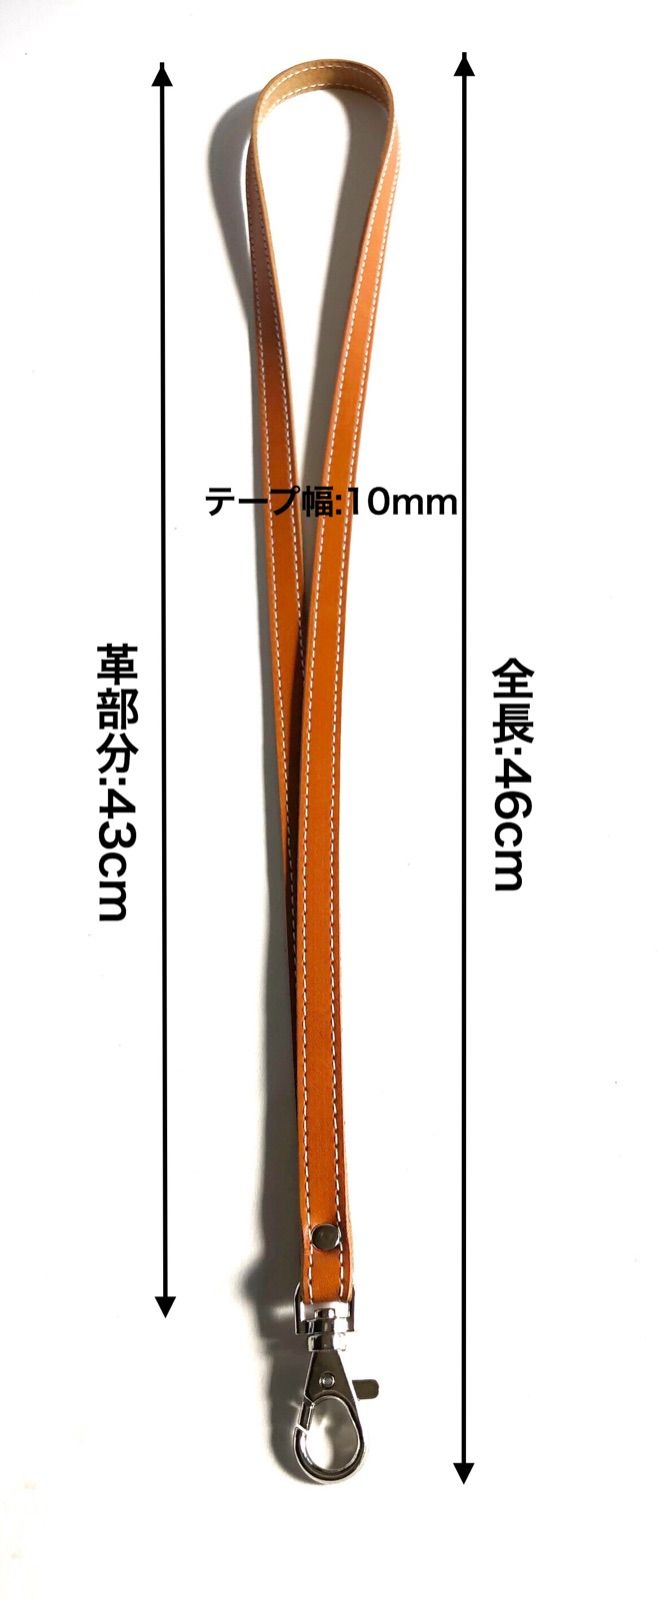 本革ヌメ 10mm ネックストラップ ステッチ オレンジ - メルカリShops